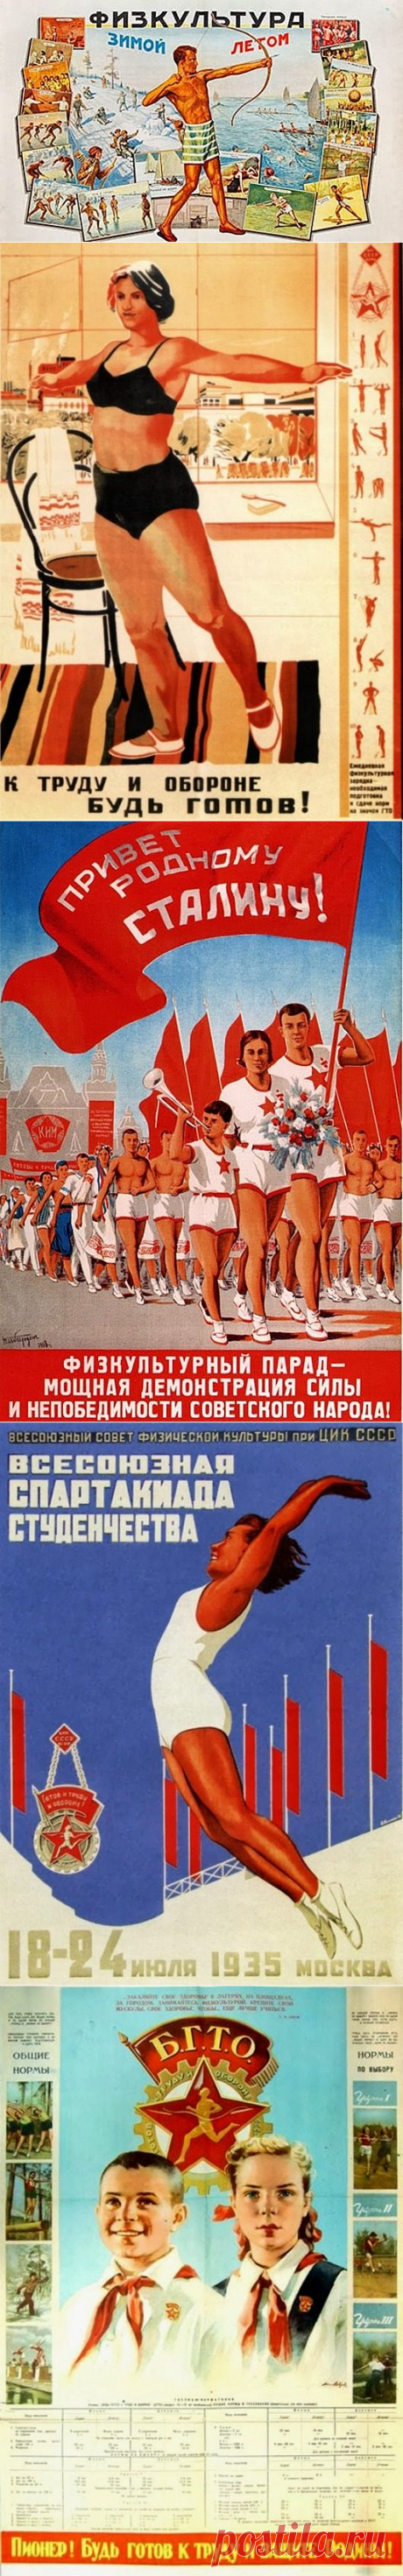 Советские плакаты - мотиваторы здорового образа жизни / Назад в СССР / Back in USSR